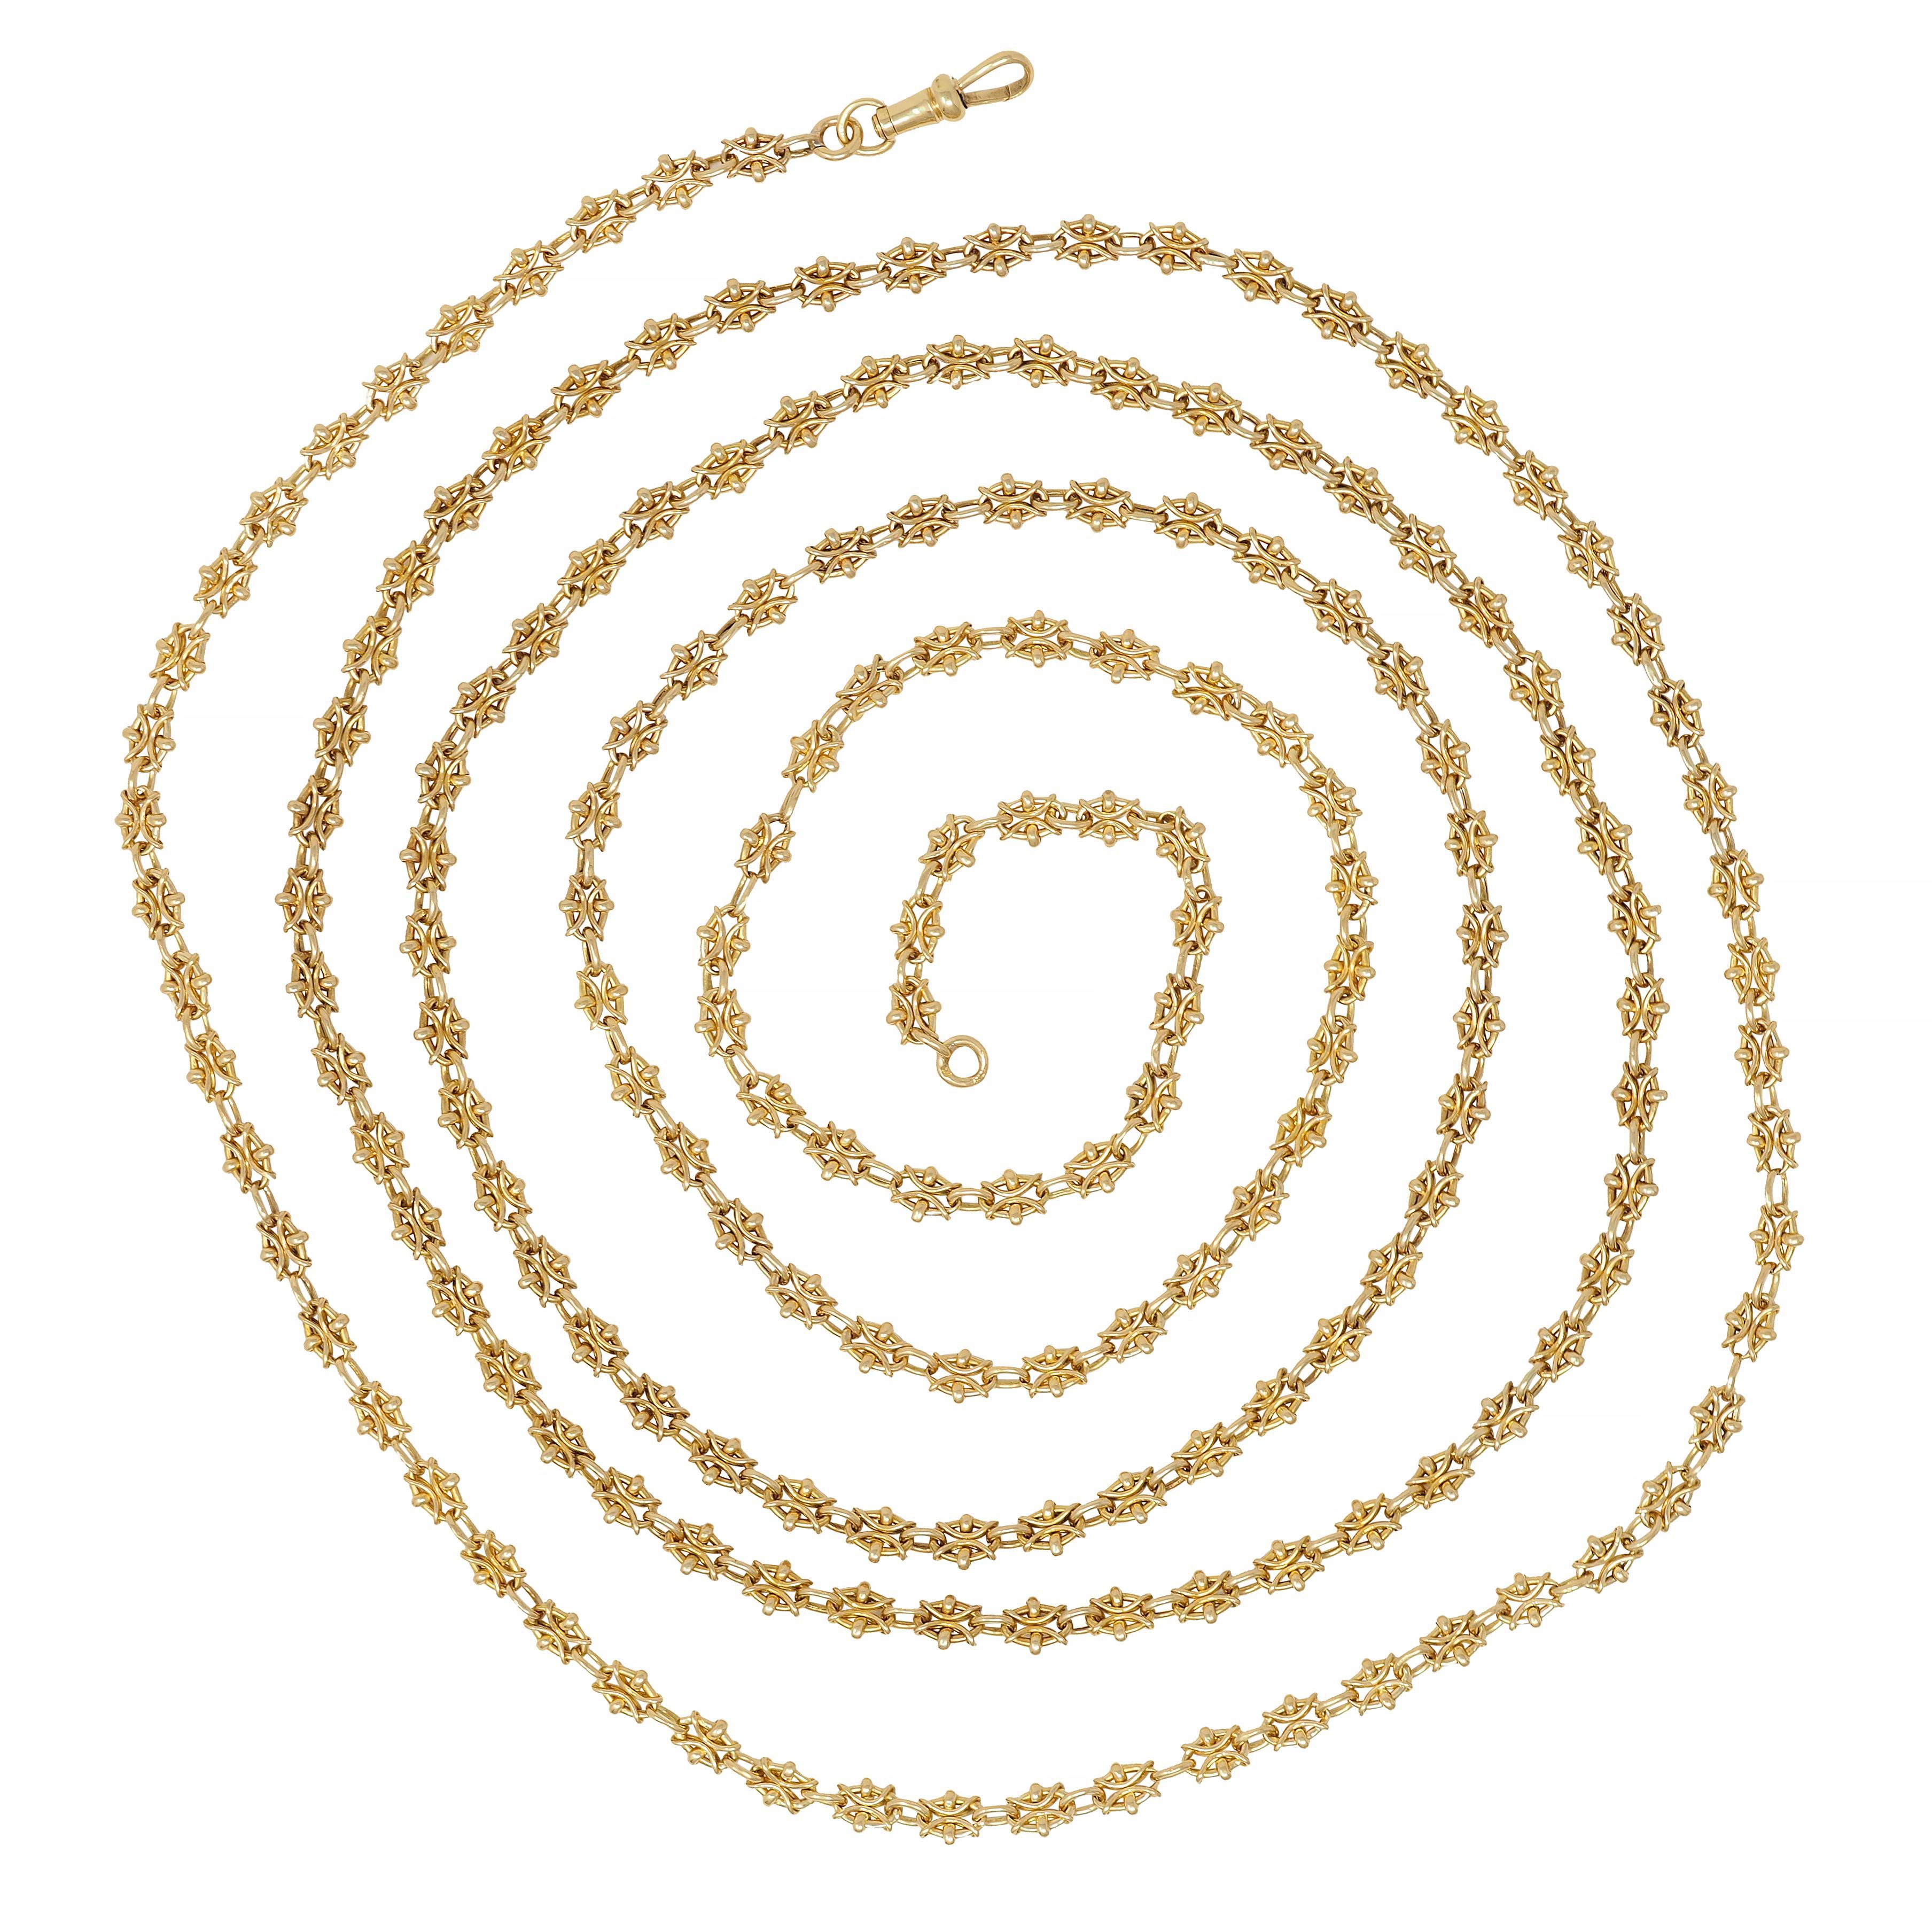 Besteht aus ovalen Gliedern, die mit gedrehten Drahtmotiven verziert sind 
Abwechselnd mit kleineren einfachen ovalen Gliedern 
Vervollständigt durch eine antike Schließe mit Anhänger
Gestempelt mit französischen Punzen für 18 Karat Gold
CIRCA: